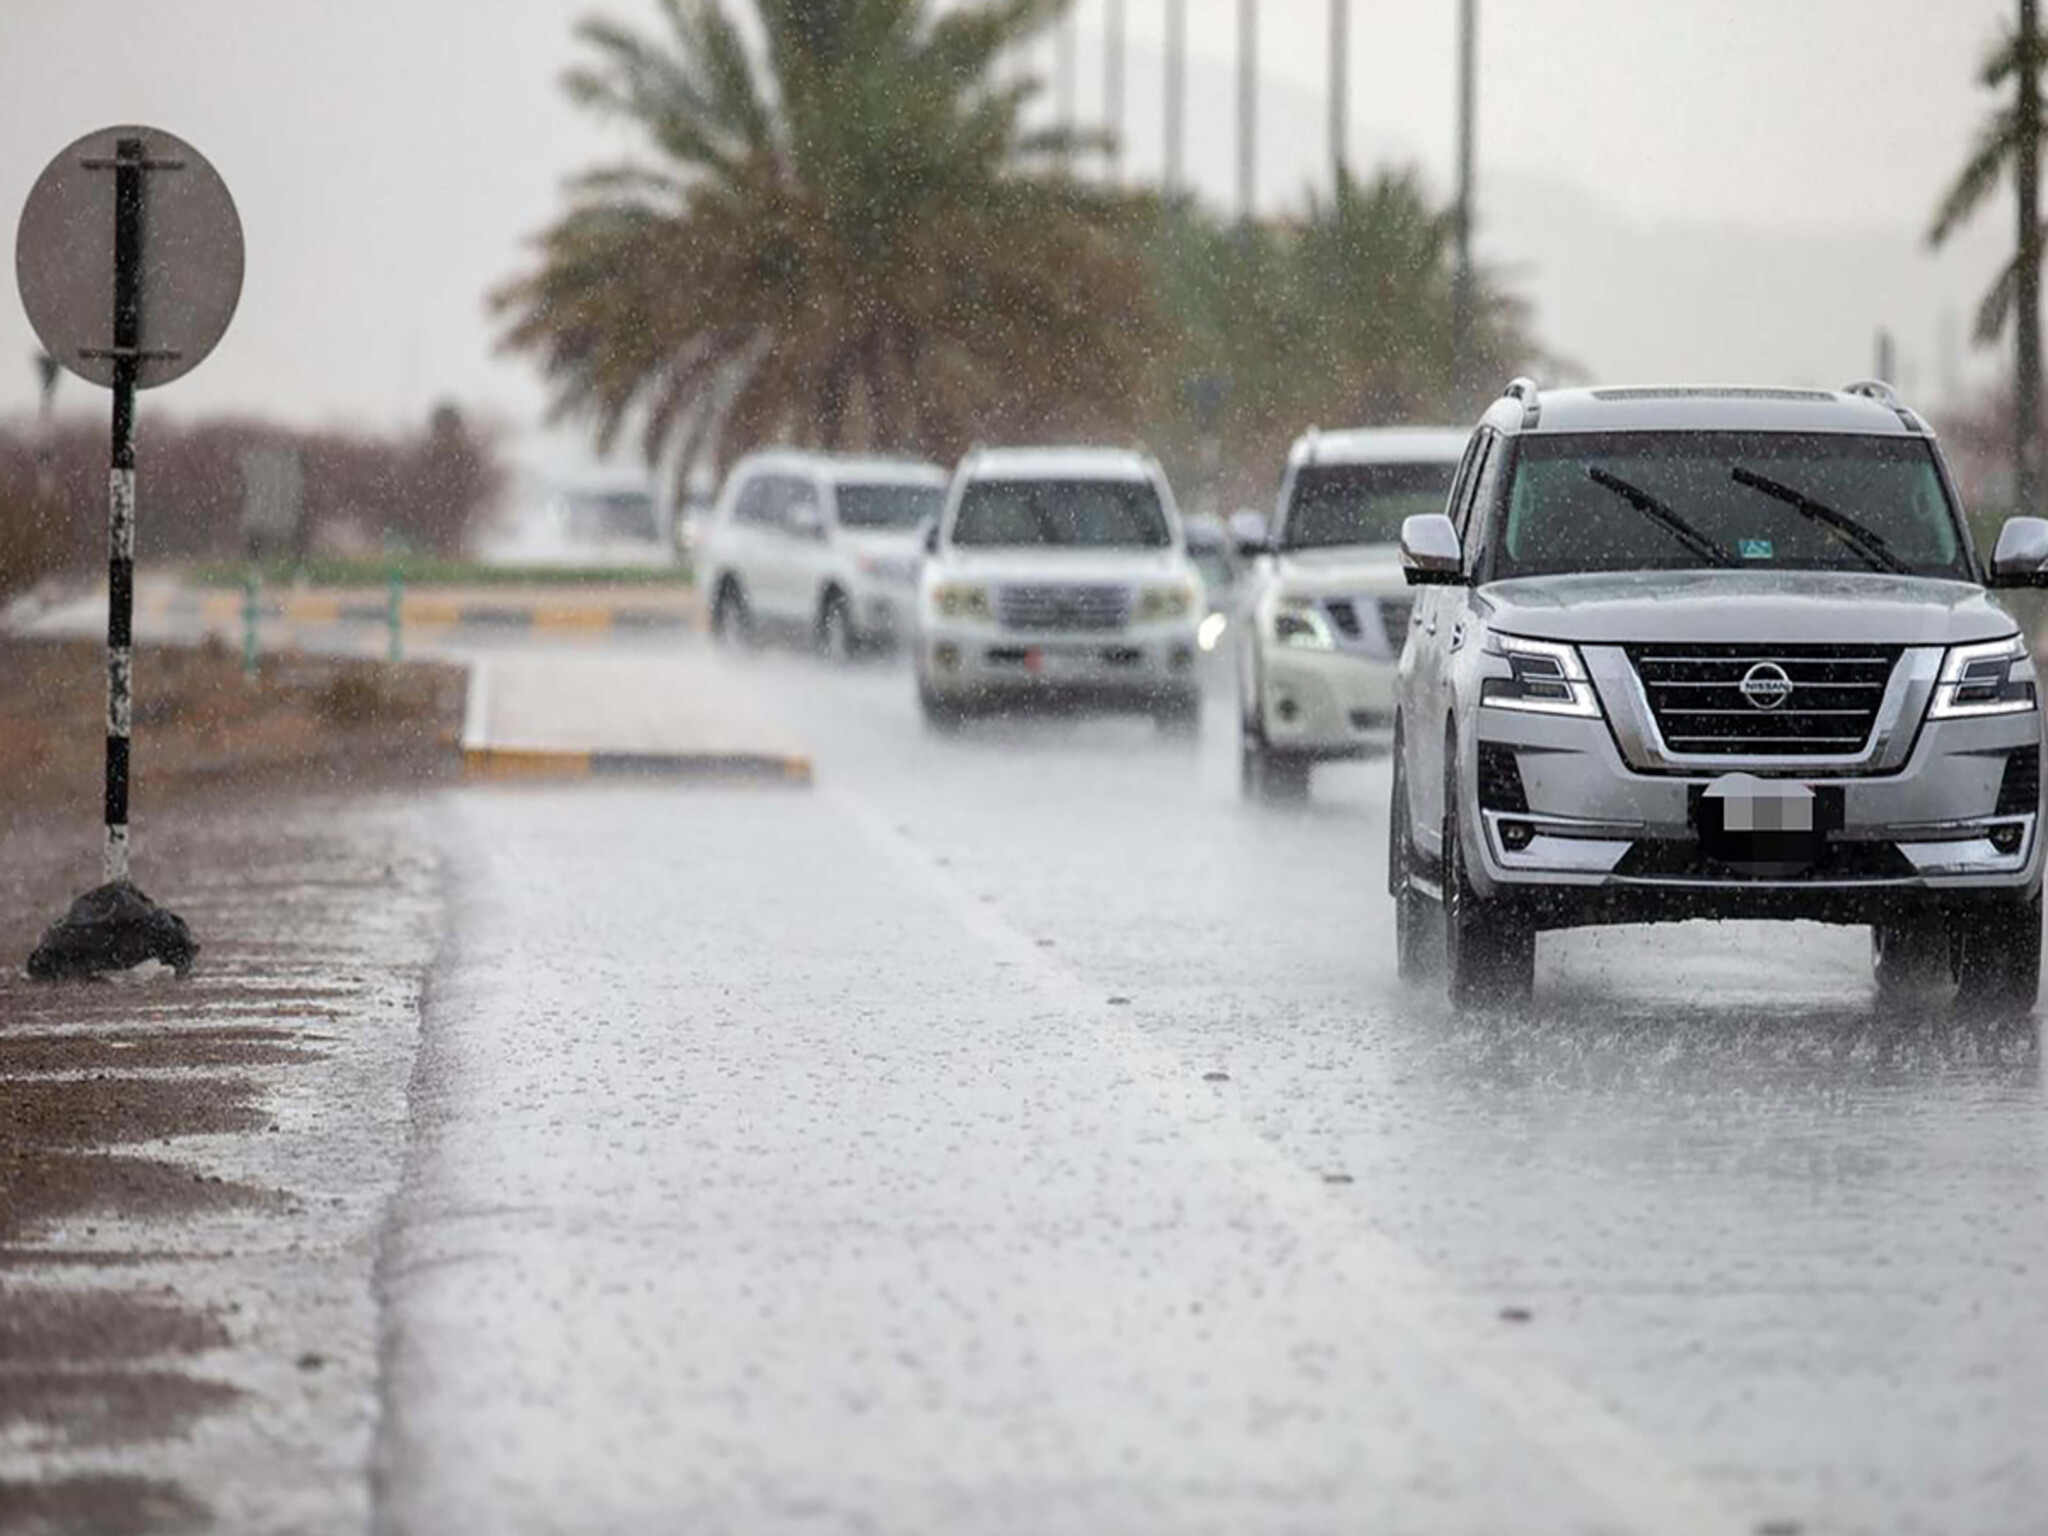 مبادرة إسقاط المخالفات المرورية في الإمارات للتسهيل على السائقين المتضررين من الفيضانات